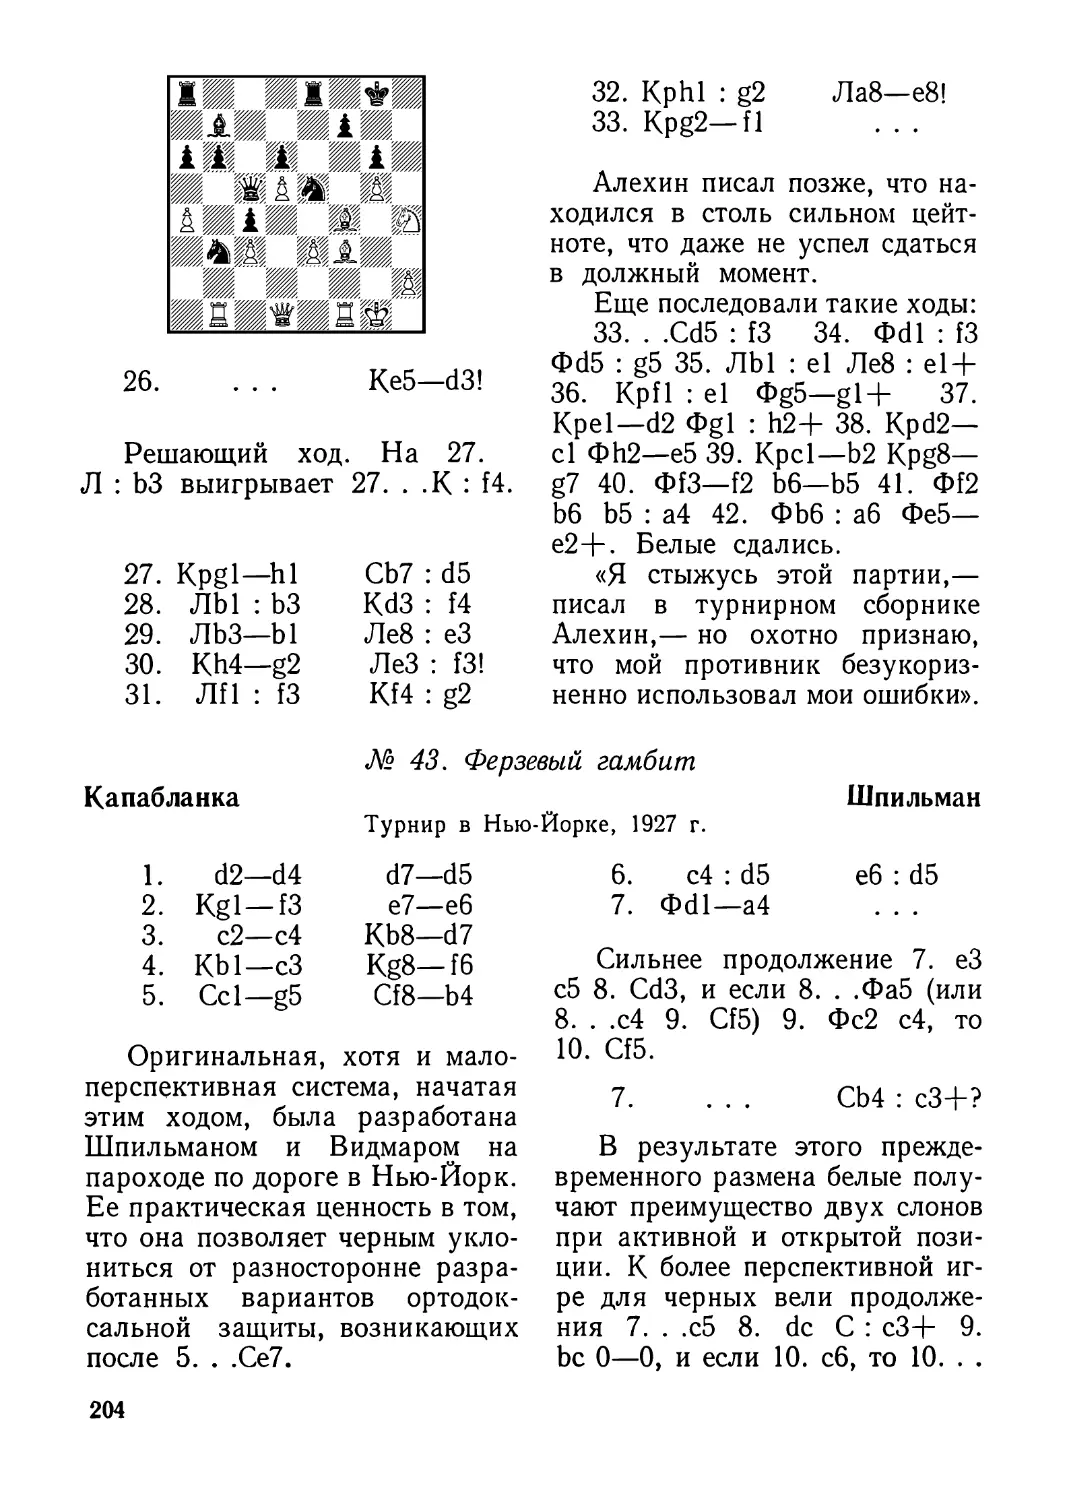 43.Капабланка — Шпильман, турнир в Нью-Йорке 1927 г.